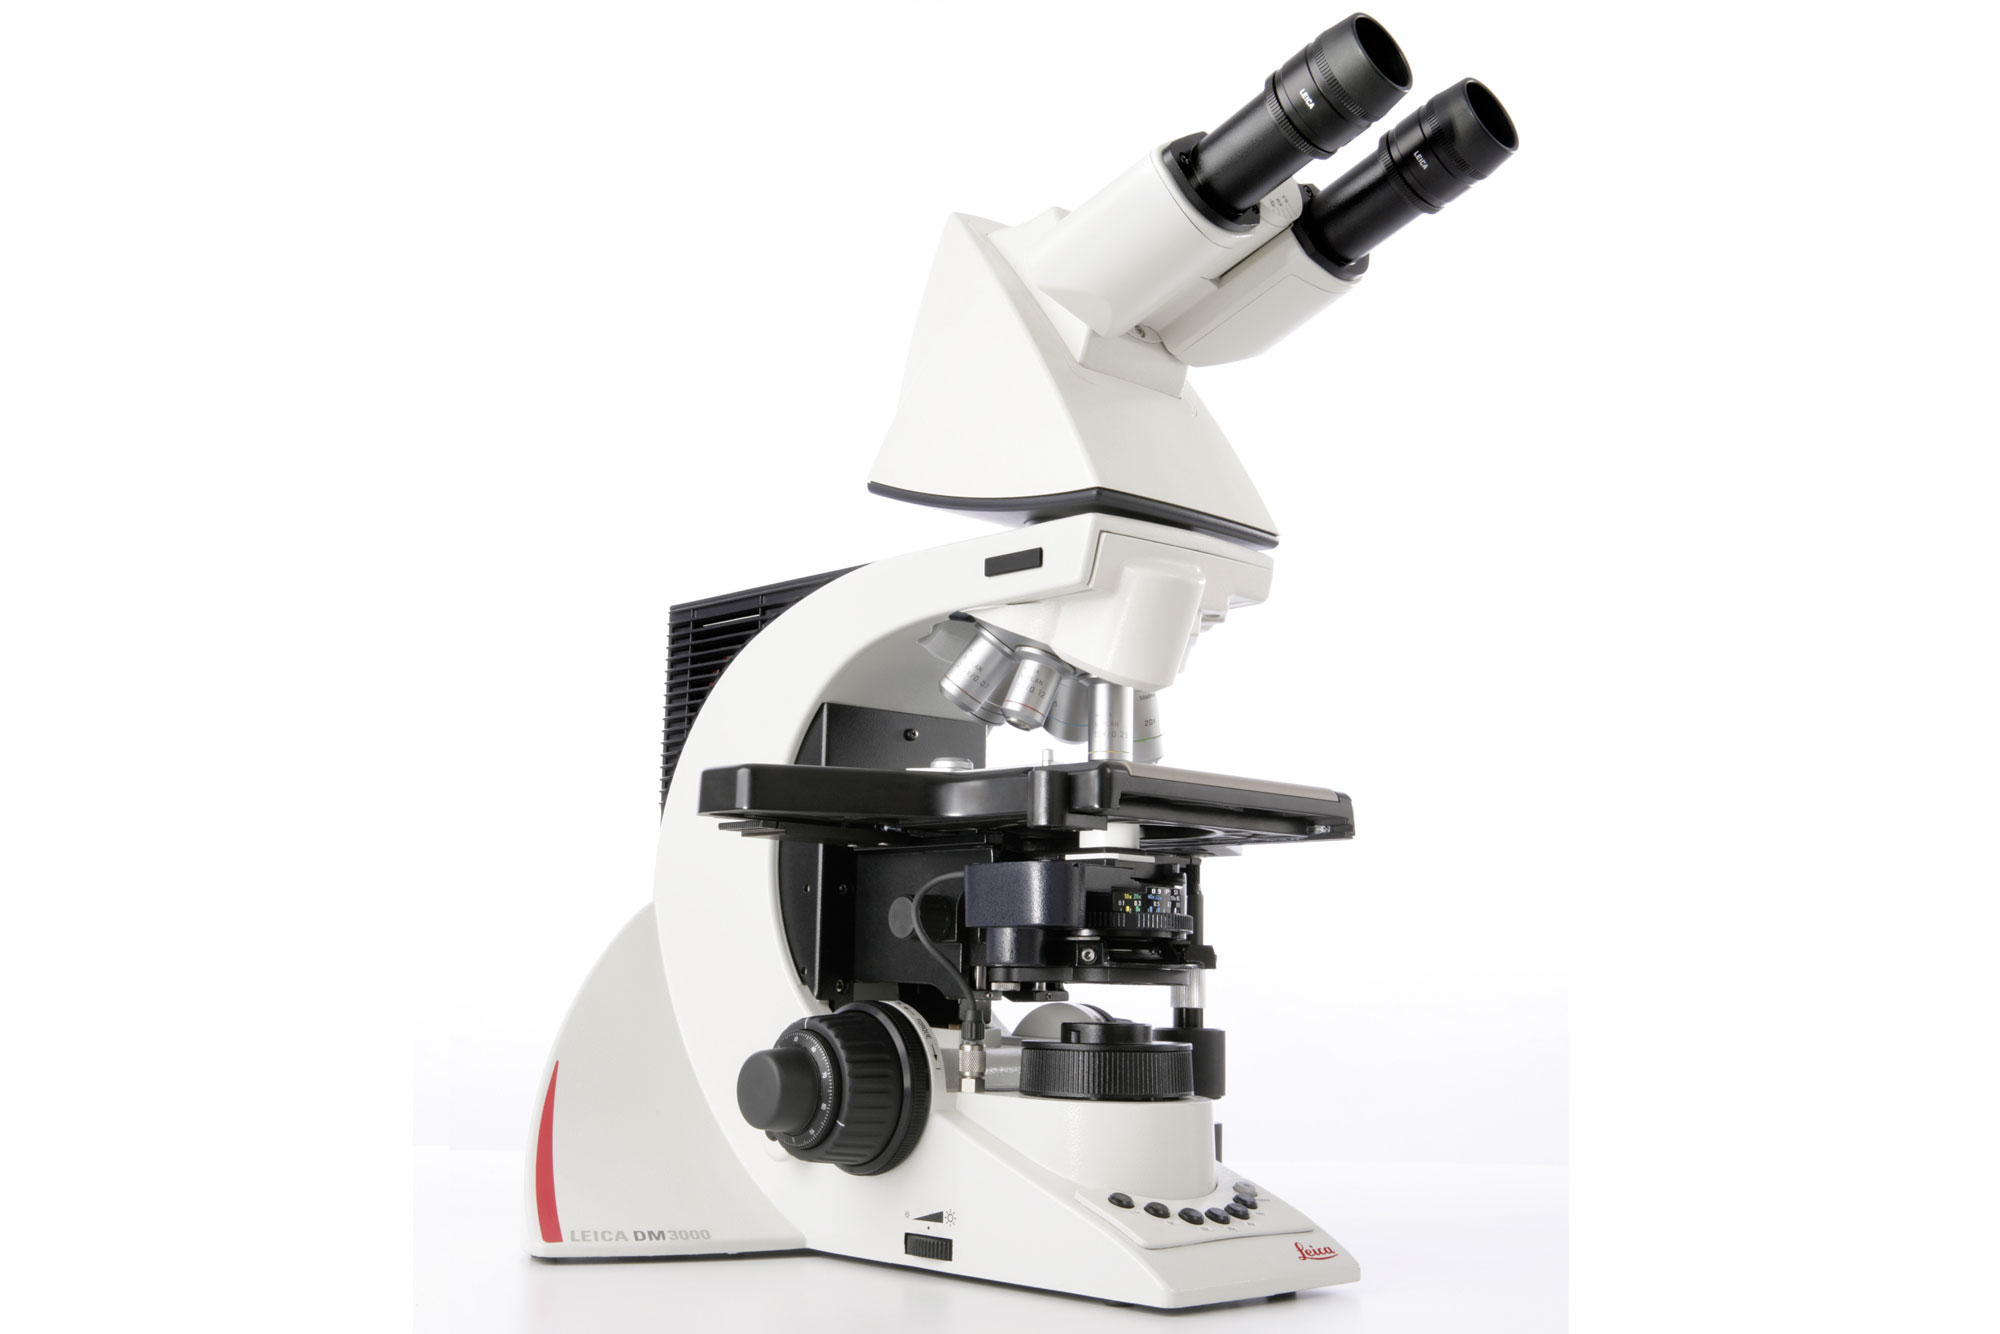 Il microscopio dall'esclusivo design ergonomico Leica DM3000 aumenta l'efficienza dei flussi di lavoro nell'ambito della citologia e della patologia grazie all'automazione intelligente.